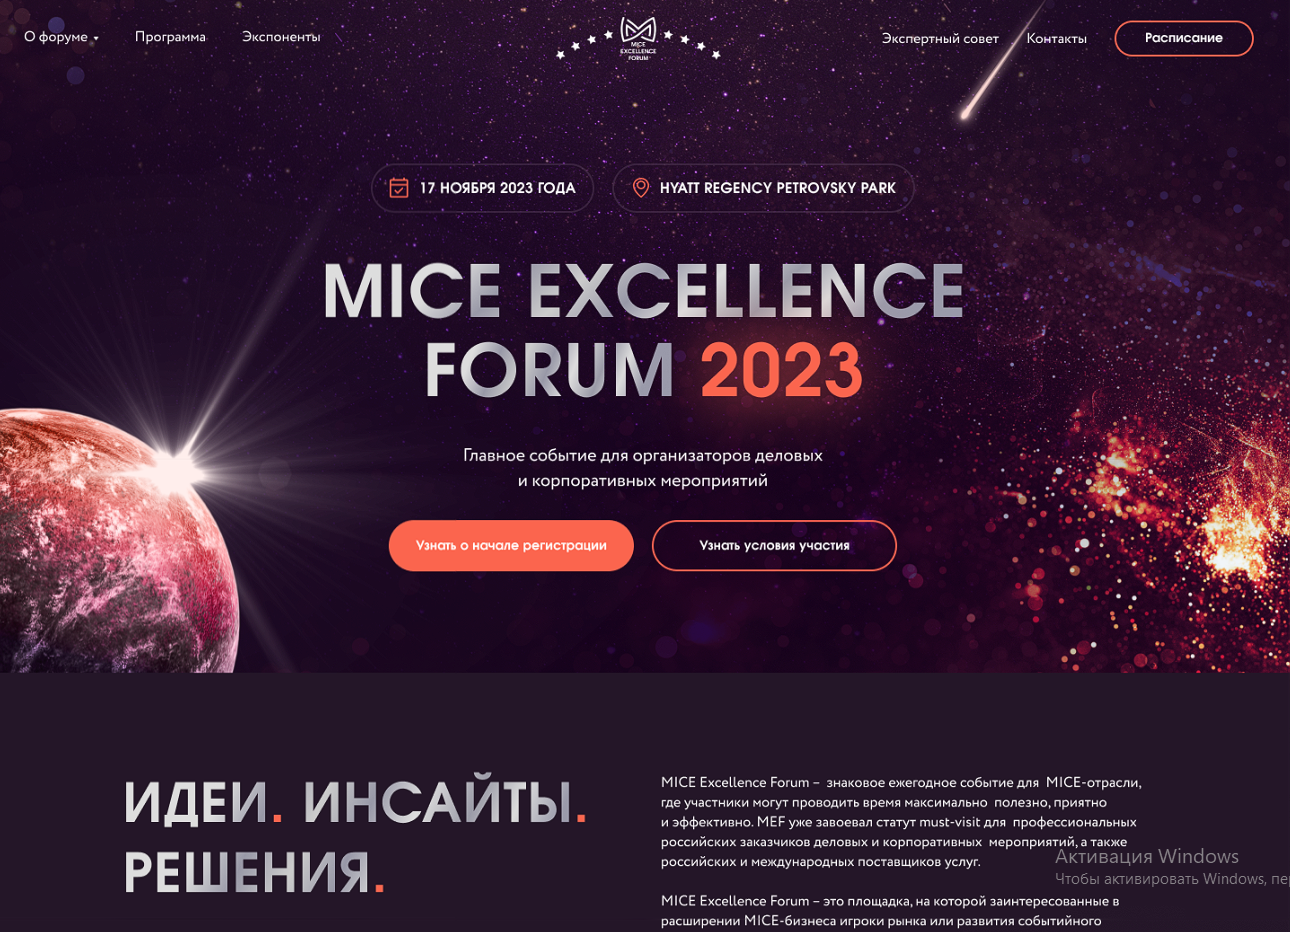 Создание сайта для компании Mice Excellence